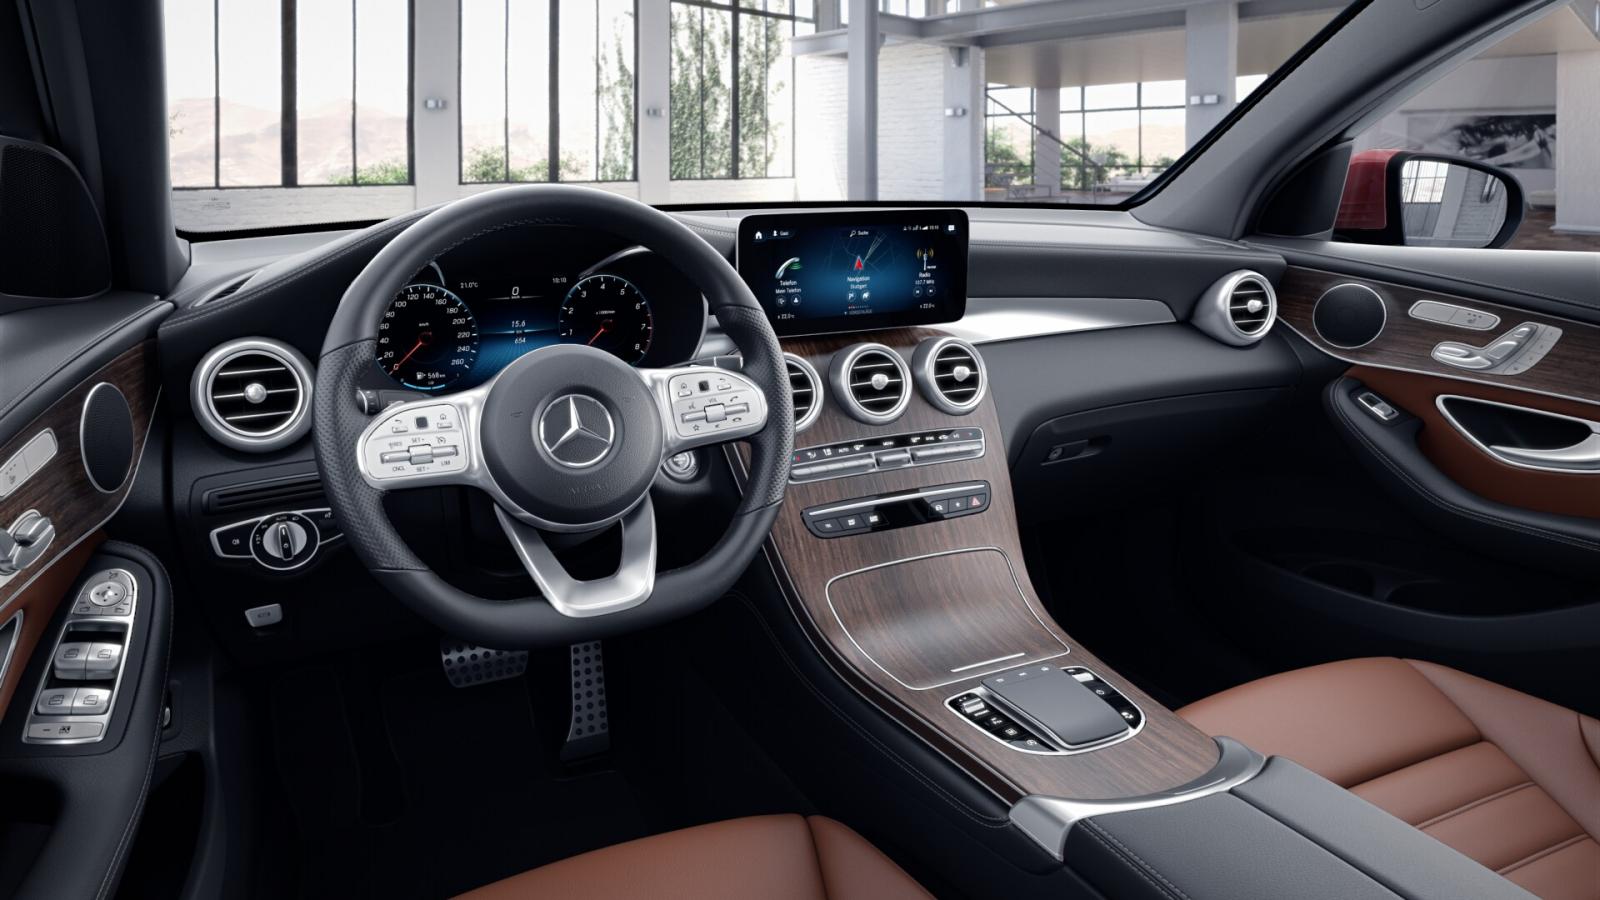 Mercedes-Benz GLC 300 Coupe 2020 chuẩn bị ra mắt khách Việt, giá dự kiến gần 3 tỷ đồng 2a